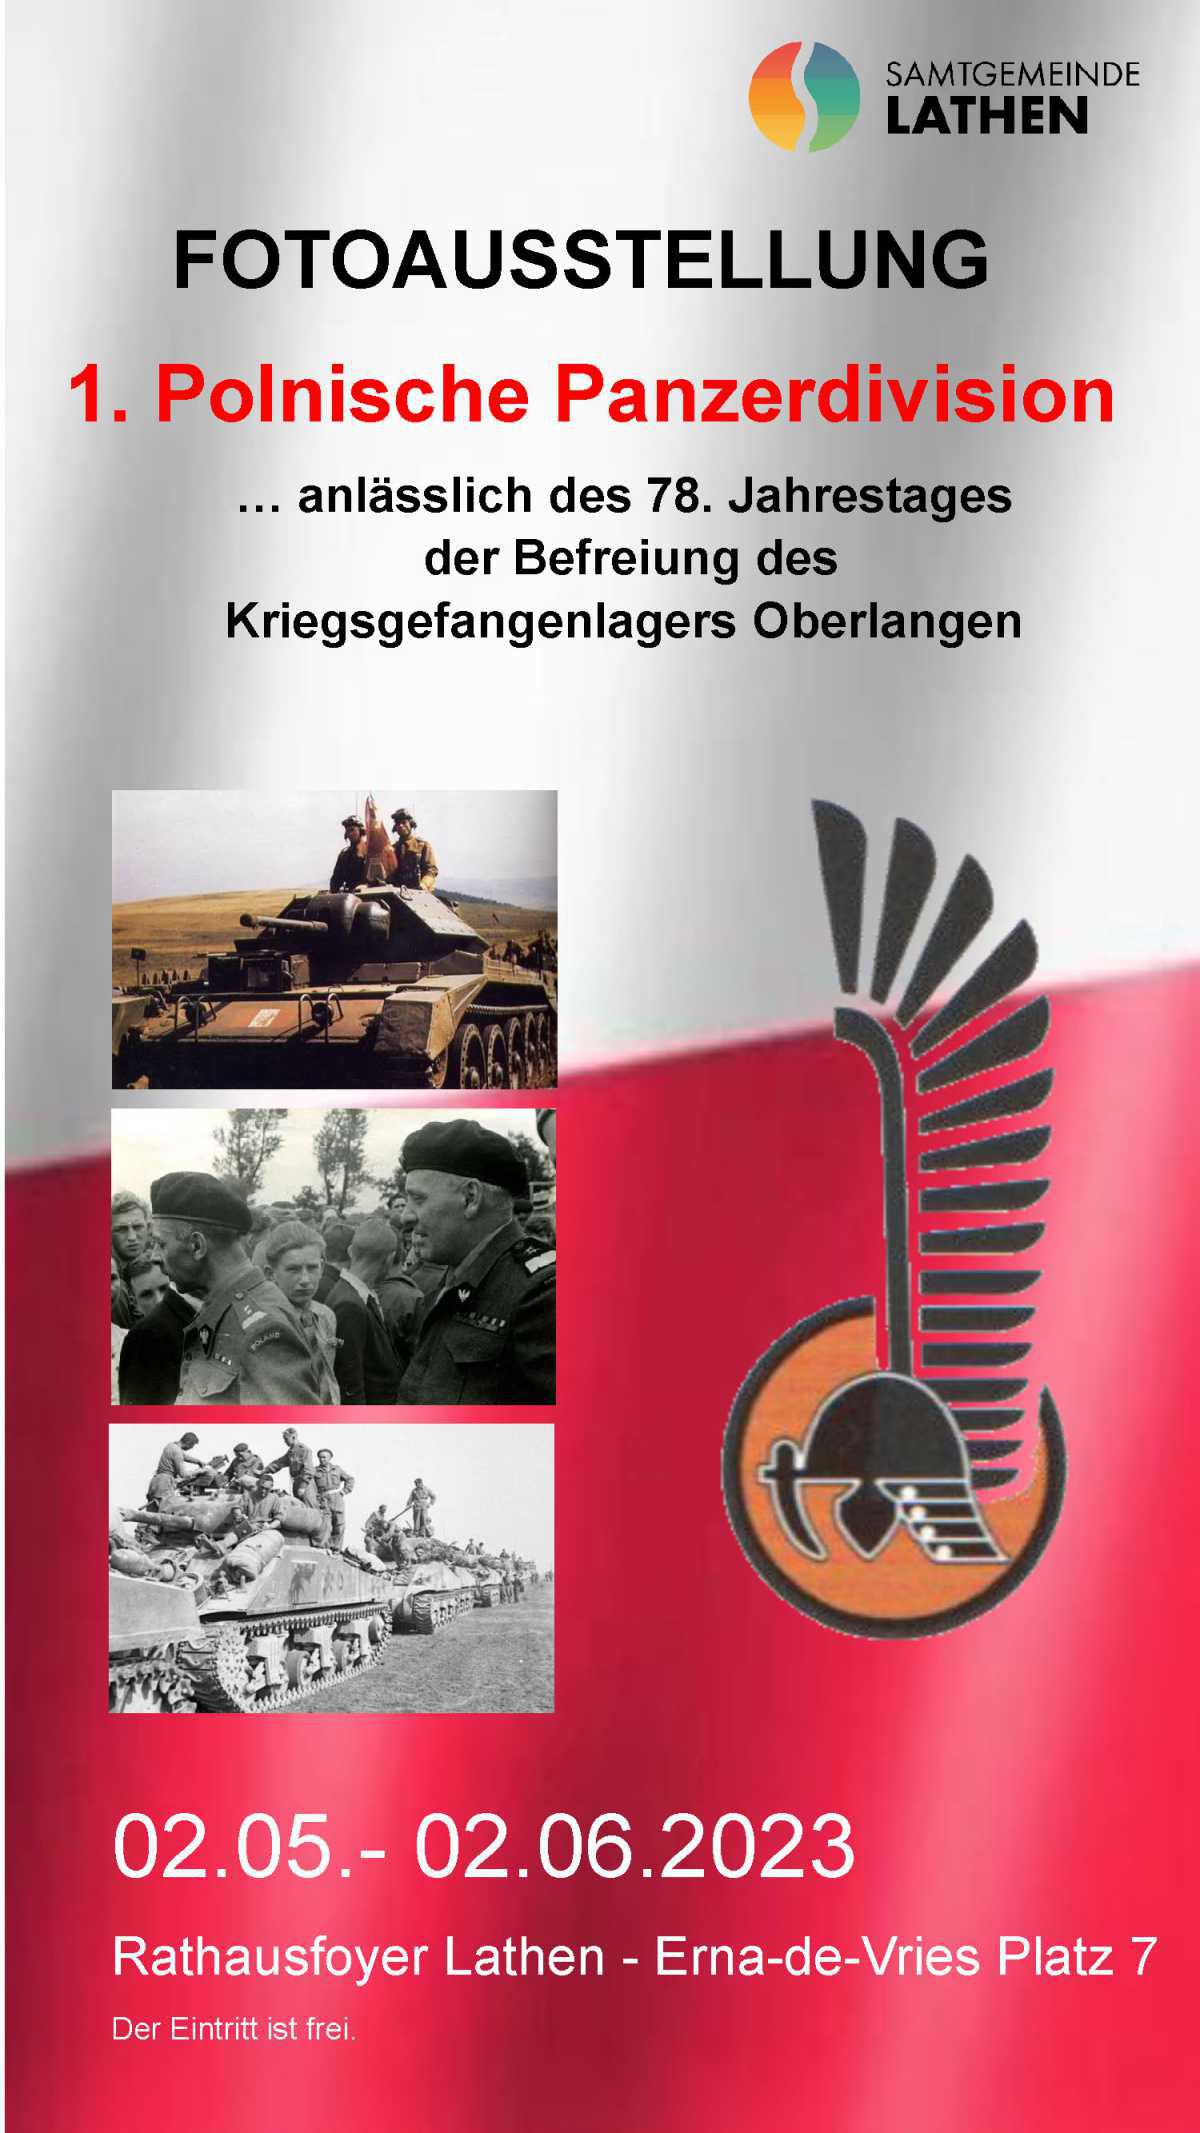 Fotoausstellung "1. Polnische Panzerdivision" ... anlässlich des 78. Jahrestages der Befreiung ...